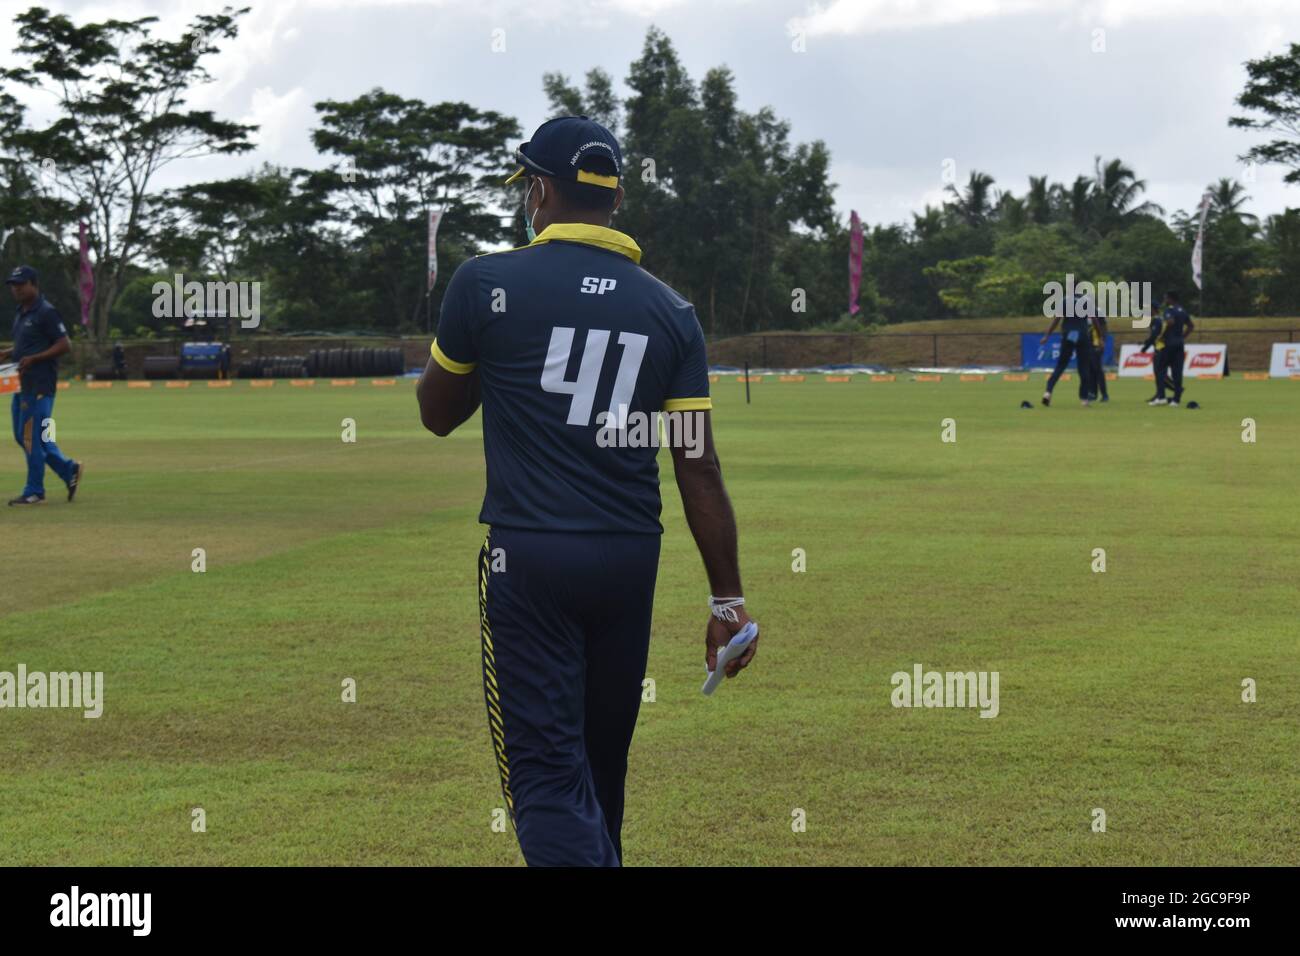 Sri Lankan cricketer Seekuge Prasanna. Sri Lanka. Stock Photo